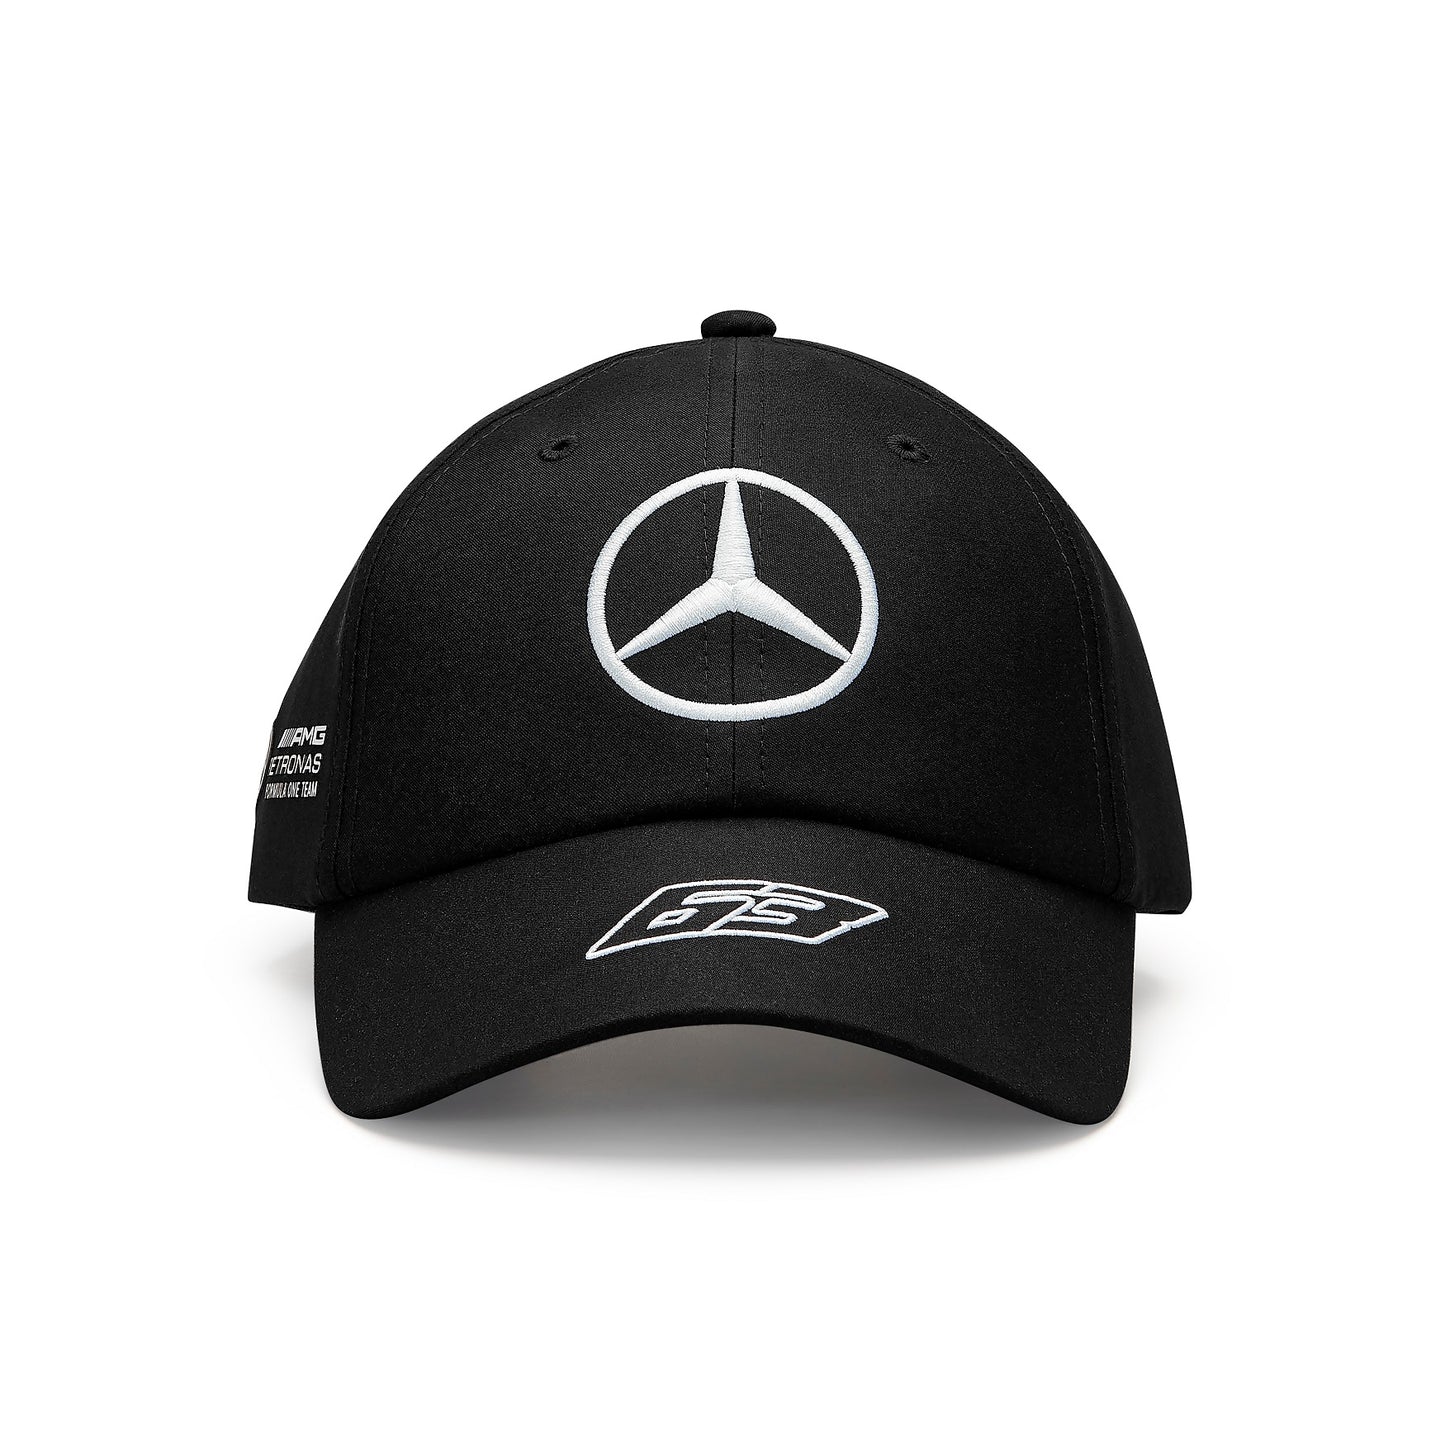 Mercedes Russel Team Dad Cap Black